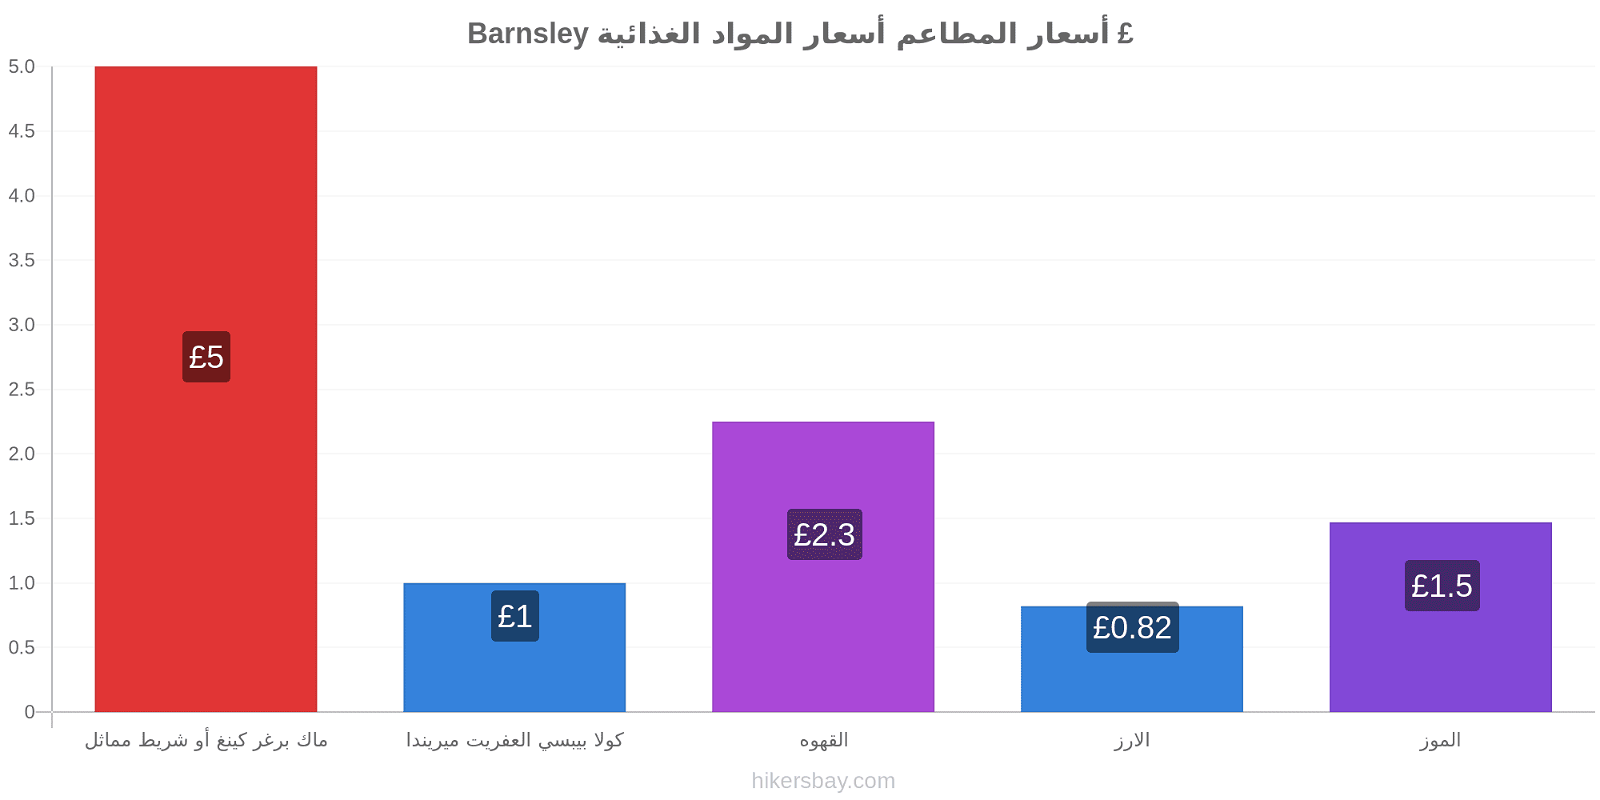 Barnsley تغييرات الأسعار hikersbay.com